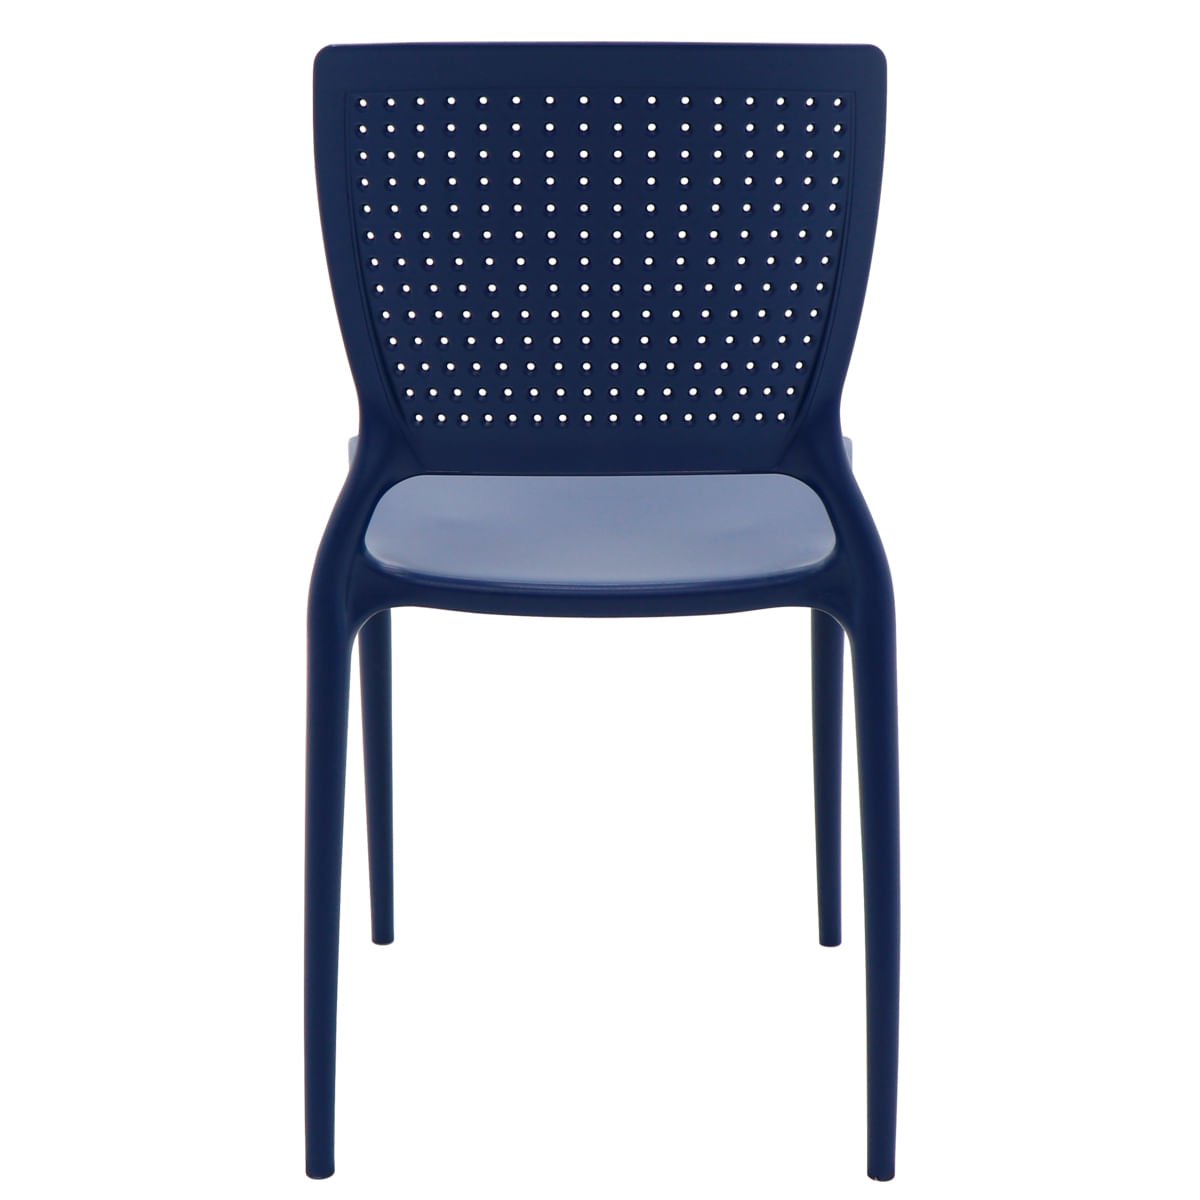 Cadeira Tramontina Safira Summa em Polipropileno e Fibra de Vidro Azul Yale - 5